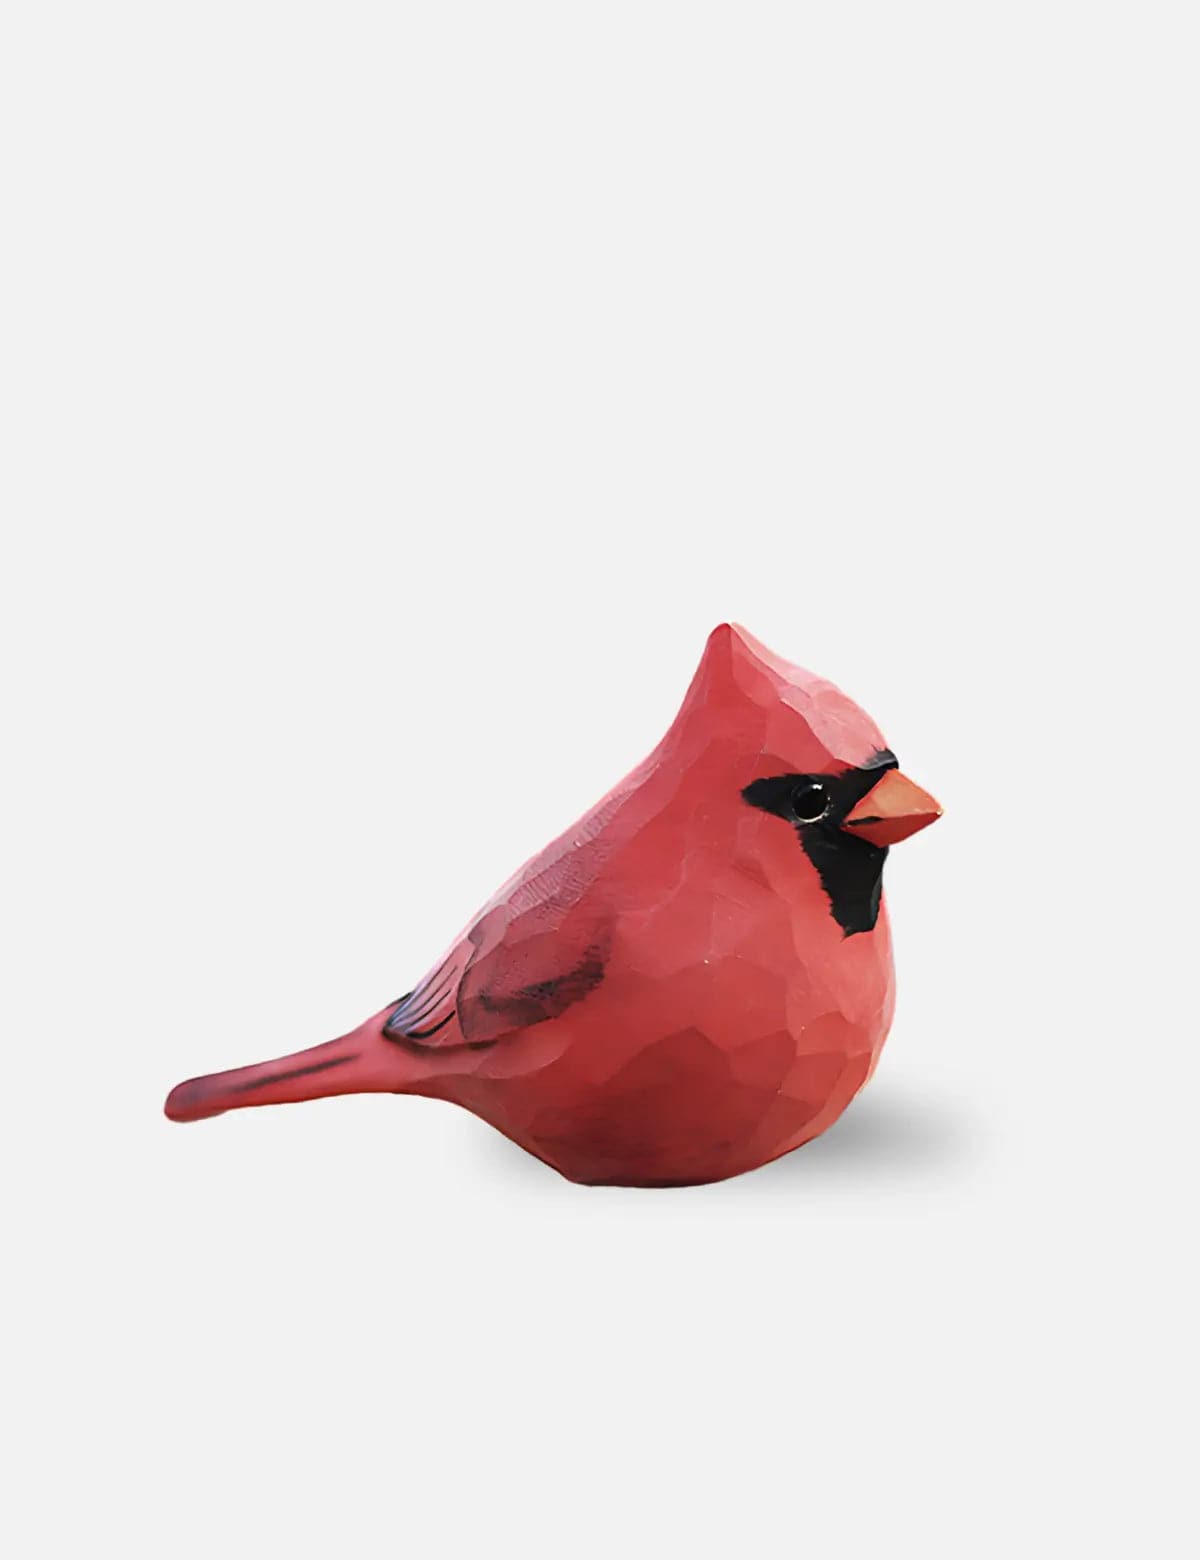 Cardinal-Wooden-Sculpture-Decor-01